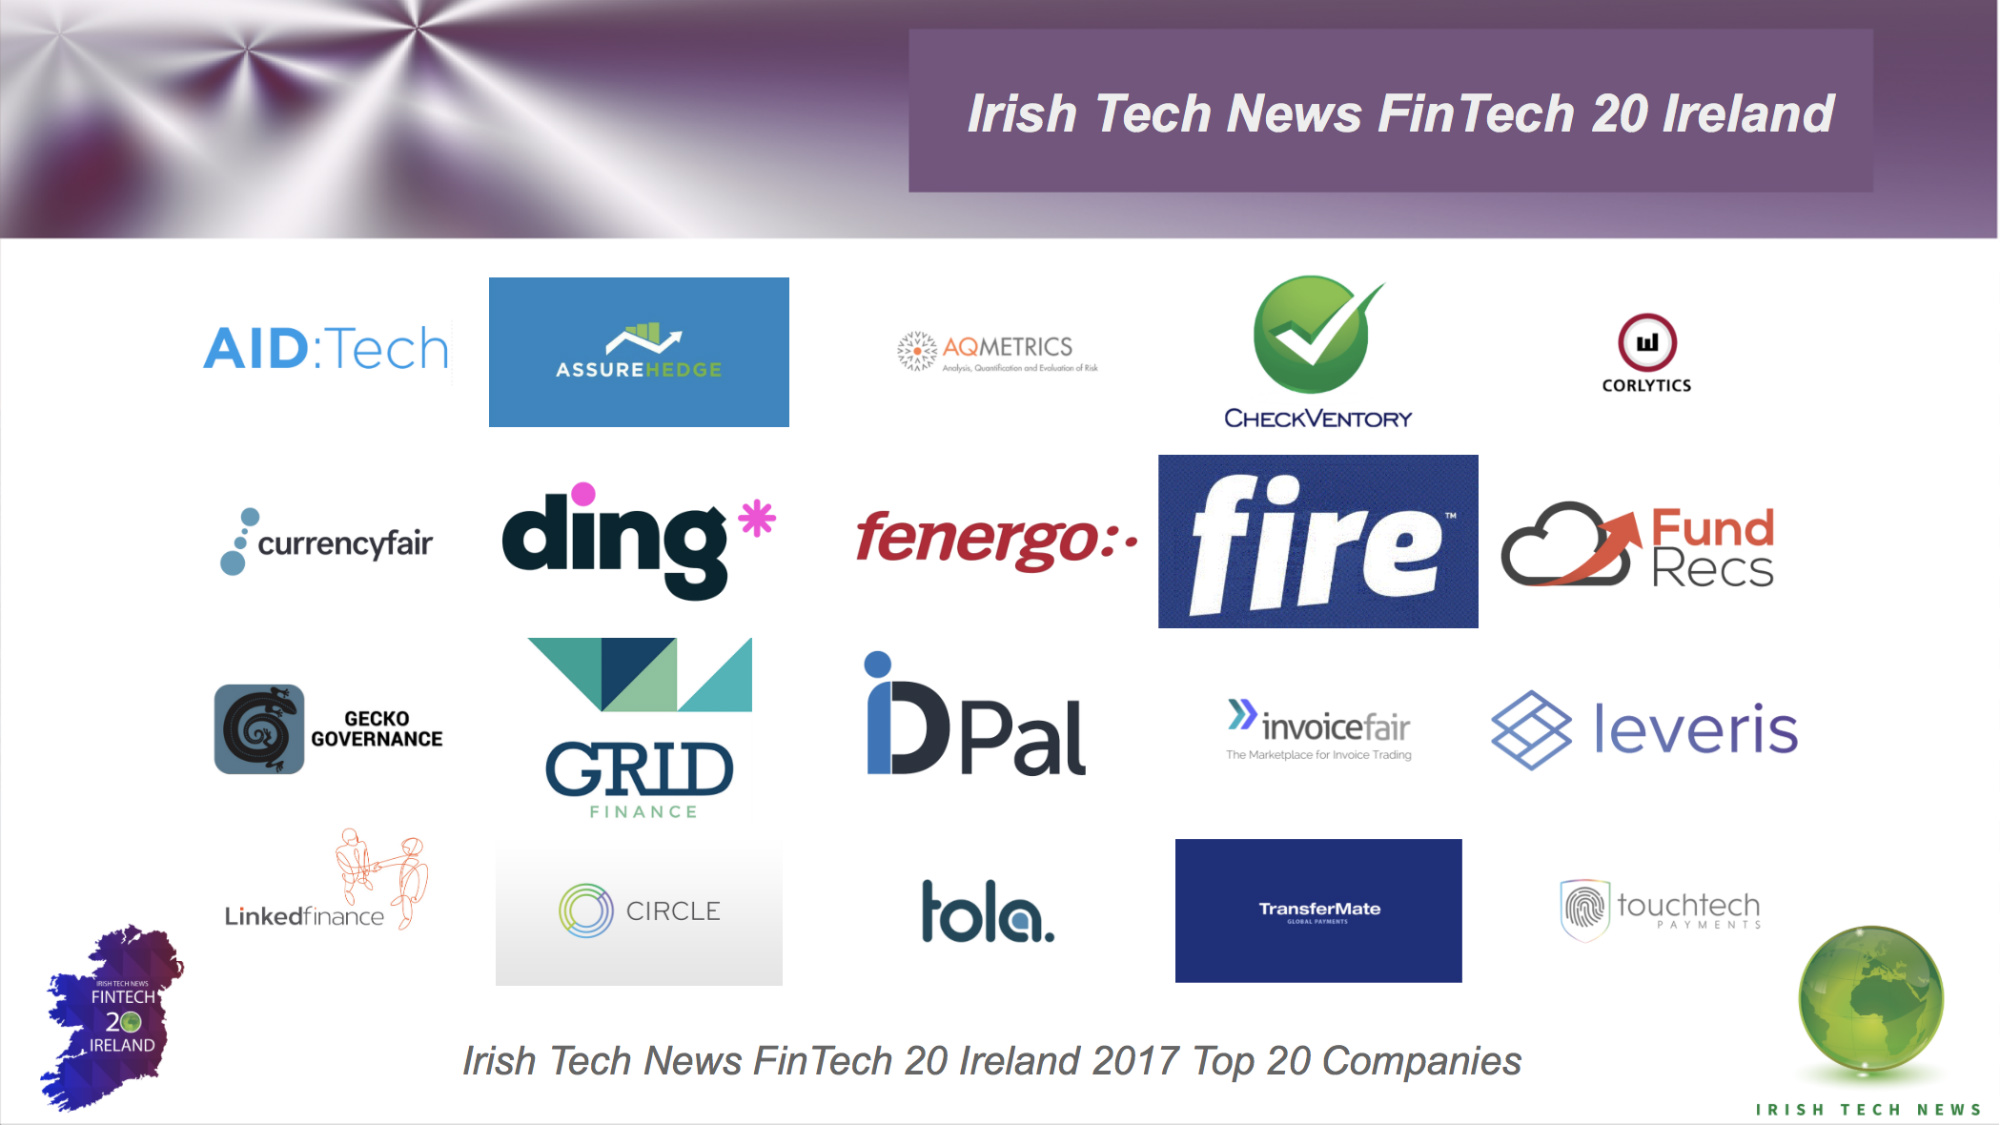 Irish Tech News FinTech 20 Ireland Top 20 Companies Announced